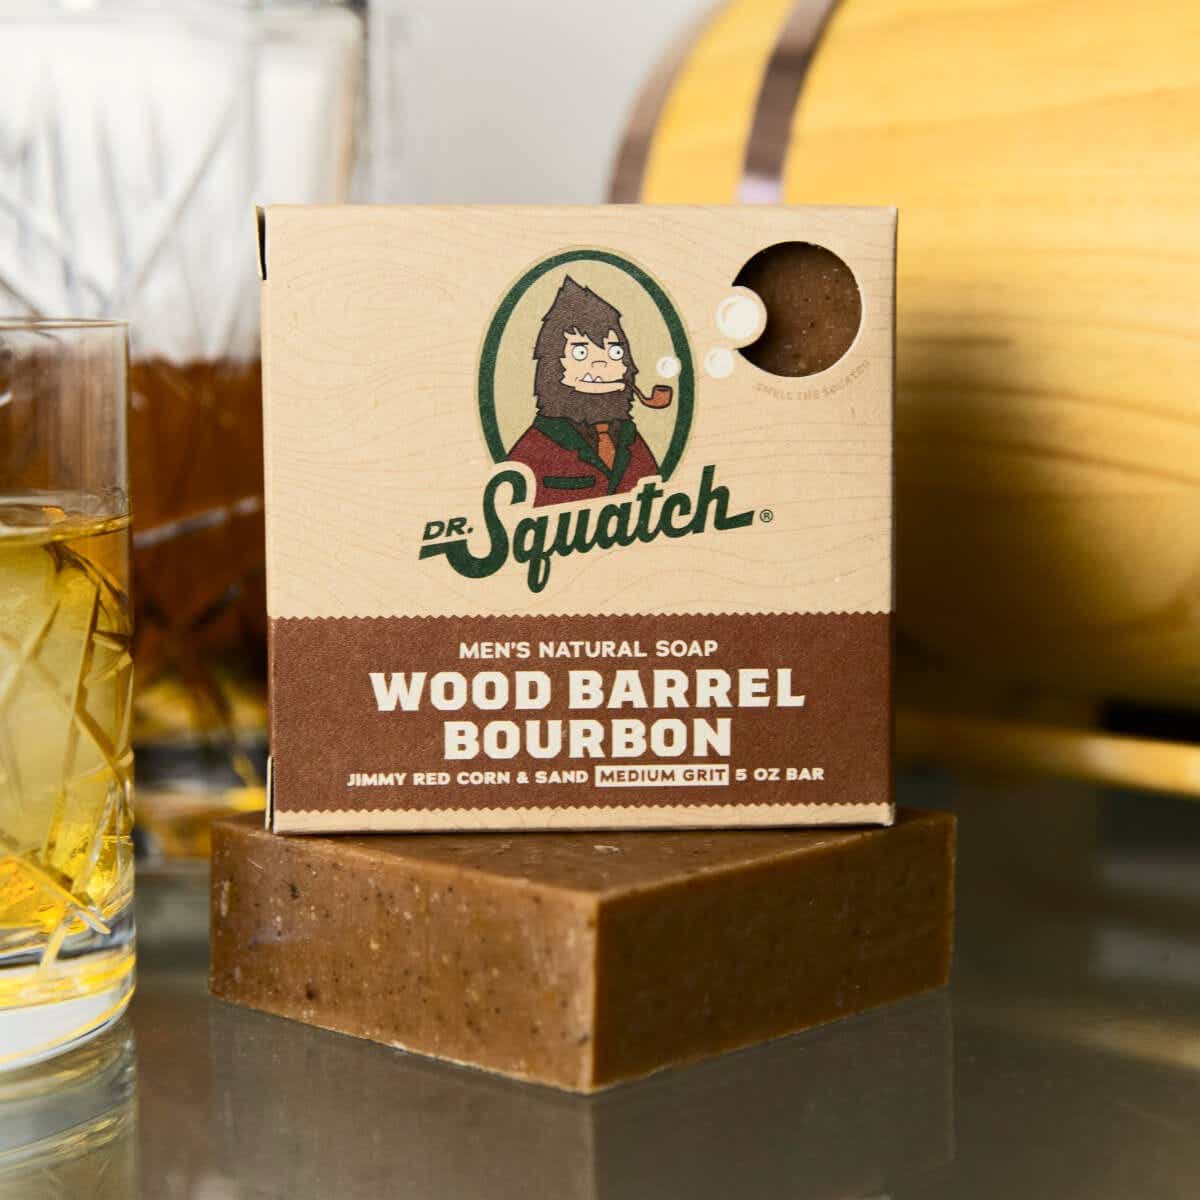 dr. squatch wood barrel bourbon soap